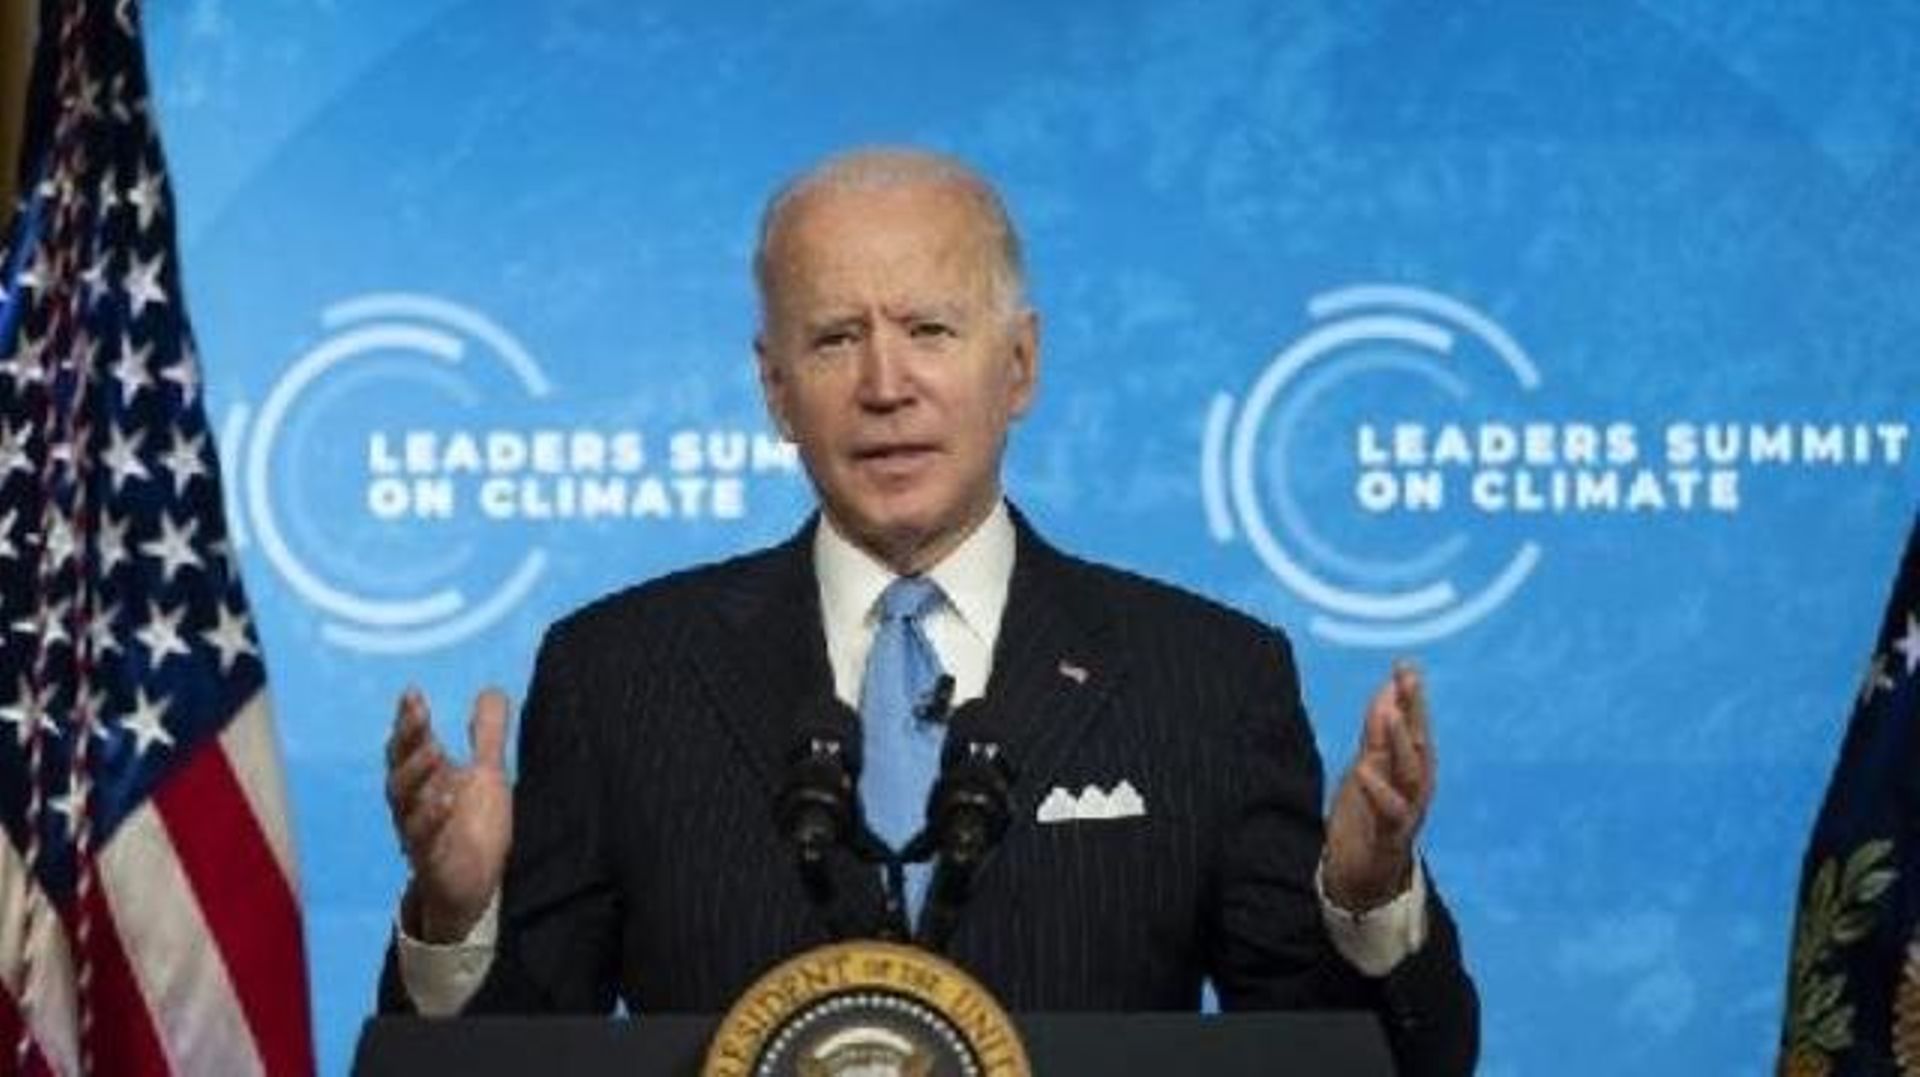 Climat - Le sommet de Biden ravive l'espoir sur le climat, mais le défi reste énorme